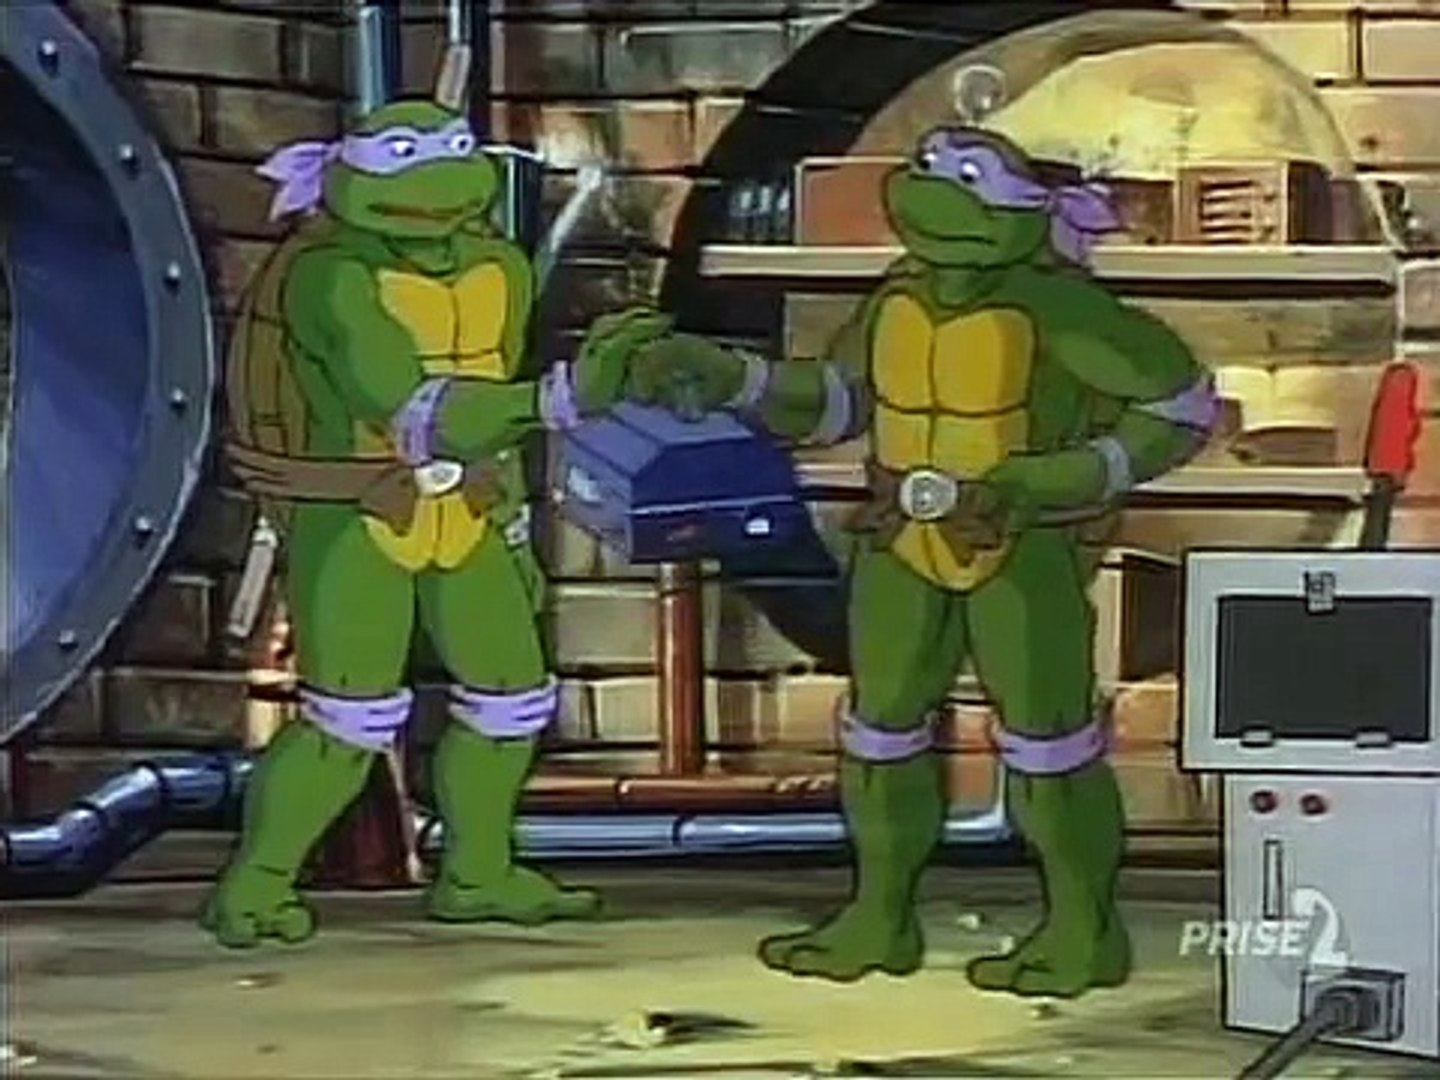 Tortues Ninja Les Chevaliers décaille S05E12 - Donatello et les clones -  video Dailymotion